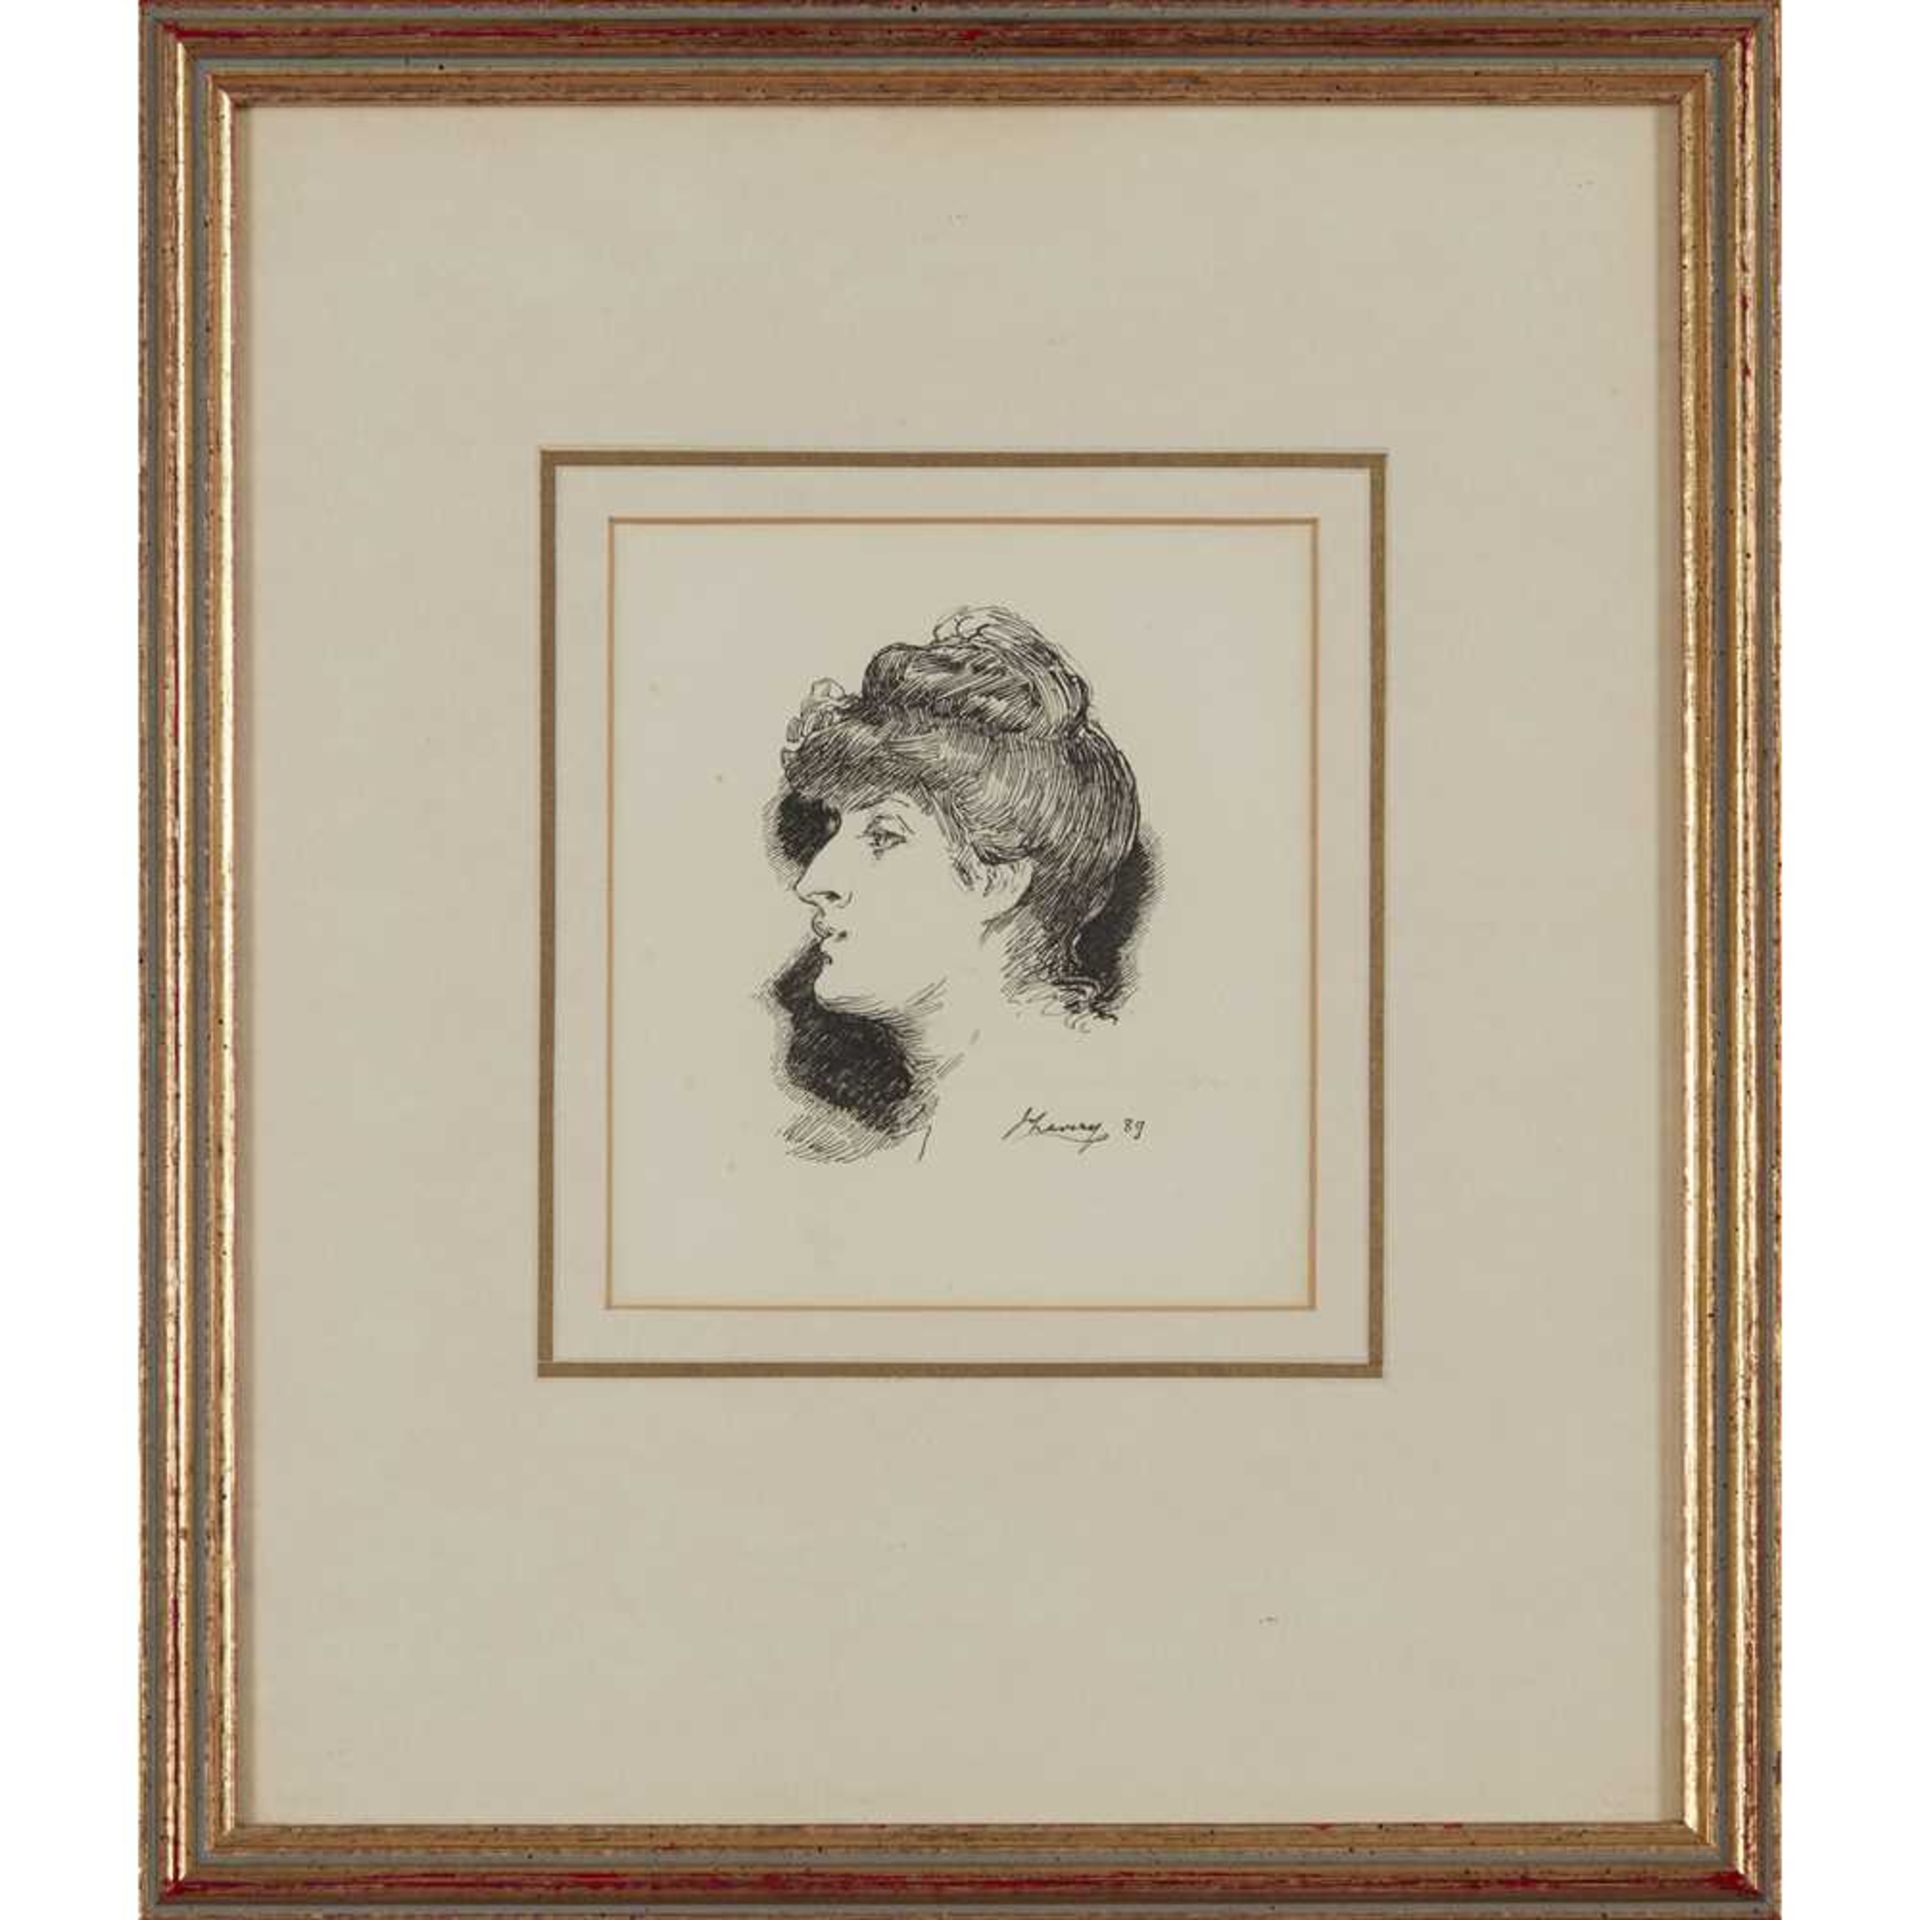 SIR JOHN LAVERY R.A., R.S.A., R.H.A., P.R.P., H.R.O.I., L.L.B. (IRISH 1856-1941) PORTRAIT HEAD, 1889 - Image 2 of 3